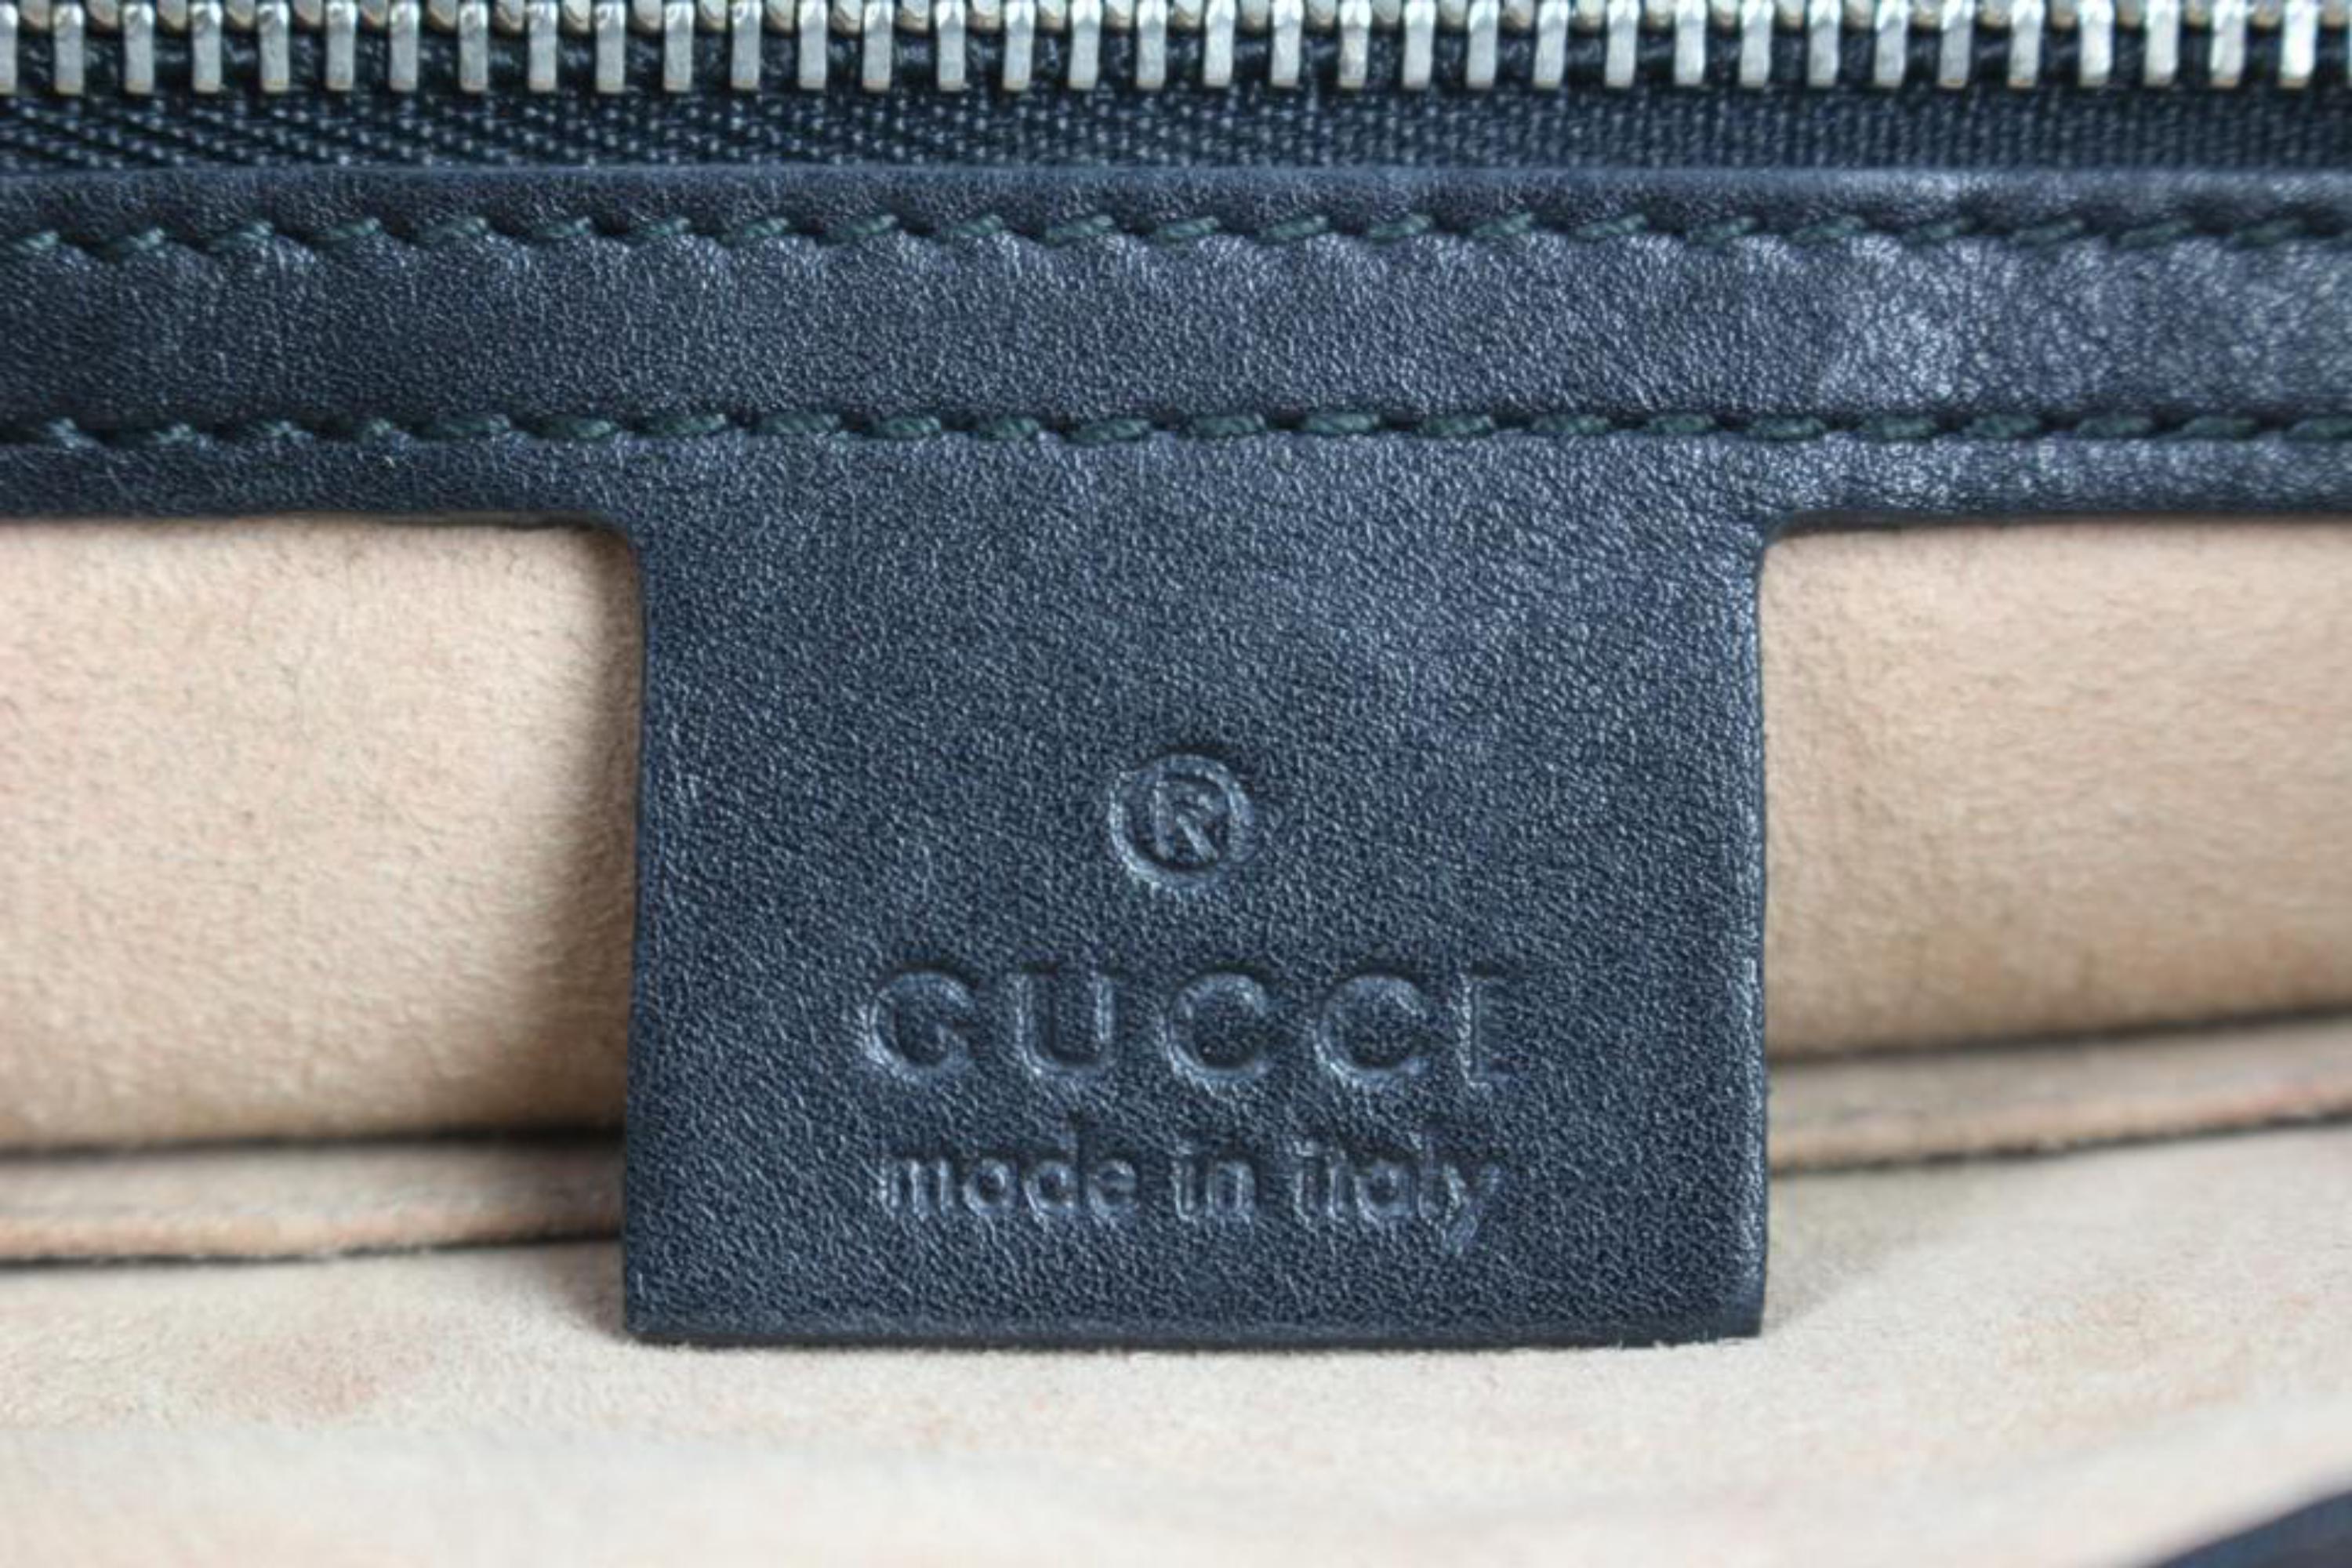 Gucci Dionysus Web 2way Hobo 8gj0111 Black Leather Shoulder Bag For Sale 7